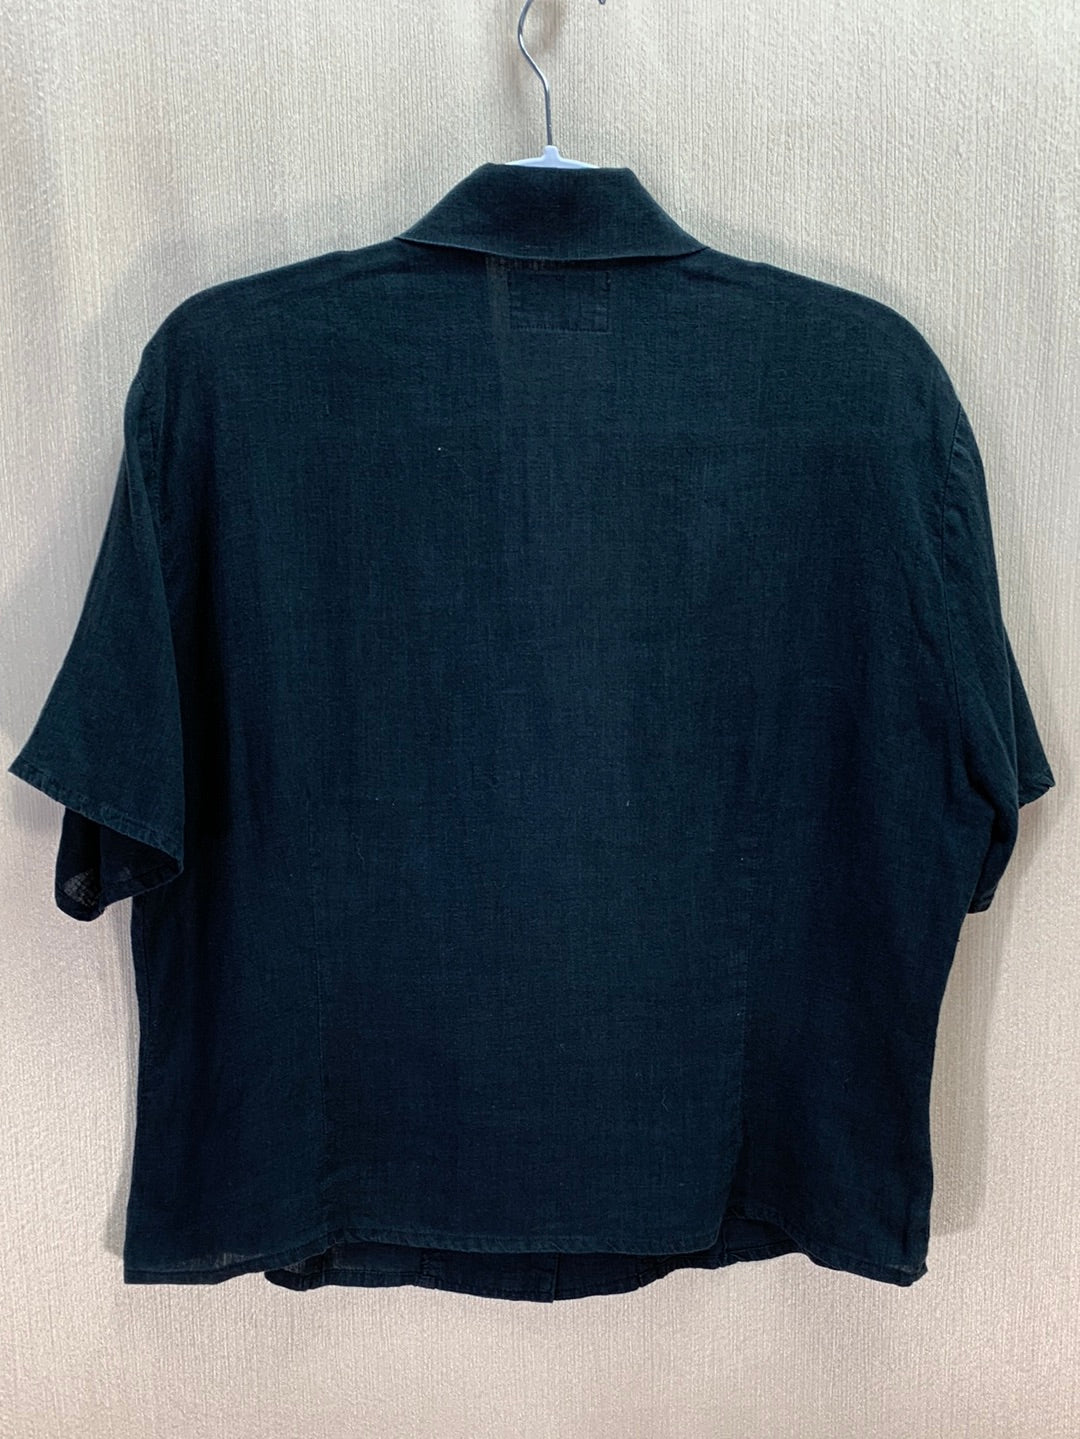 FLAX JEANNE ENGELHART faded black Linen Button Up Short Sleeve Top